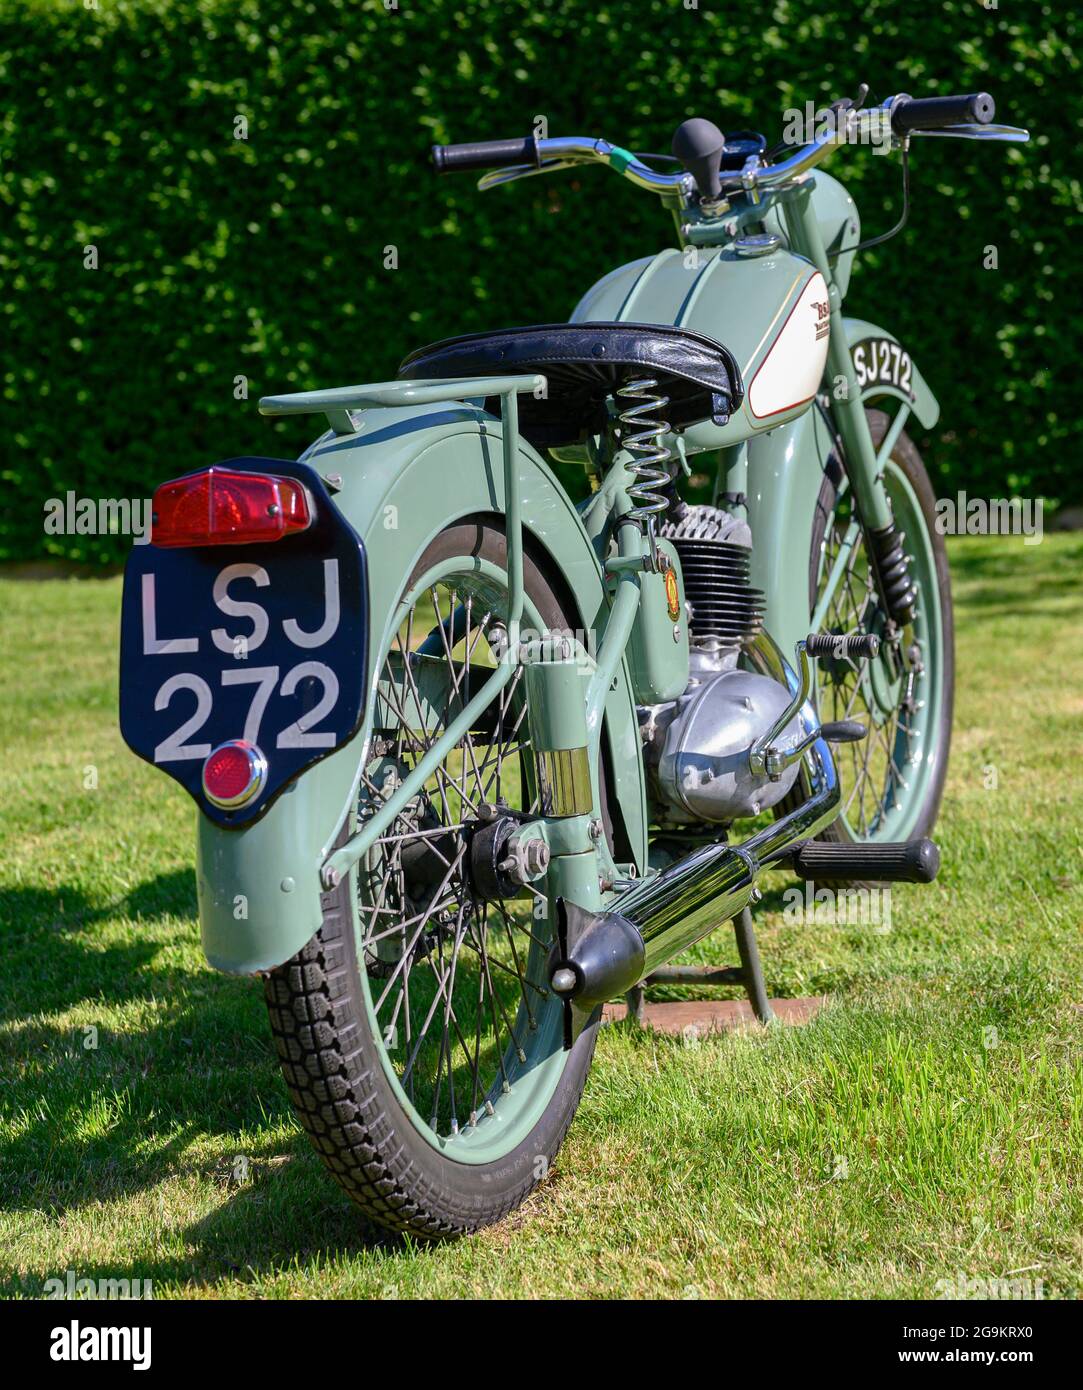 Das 1955 D1 125cc BSA Bantam Motorrad in original Mist Green Farbe, ein beliebtes Vintage-Motorrad, das vollständig restauriert wurde Stockfoto